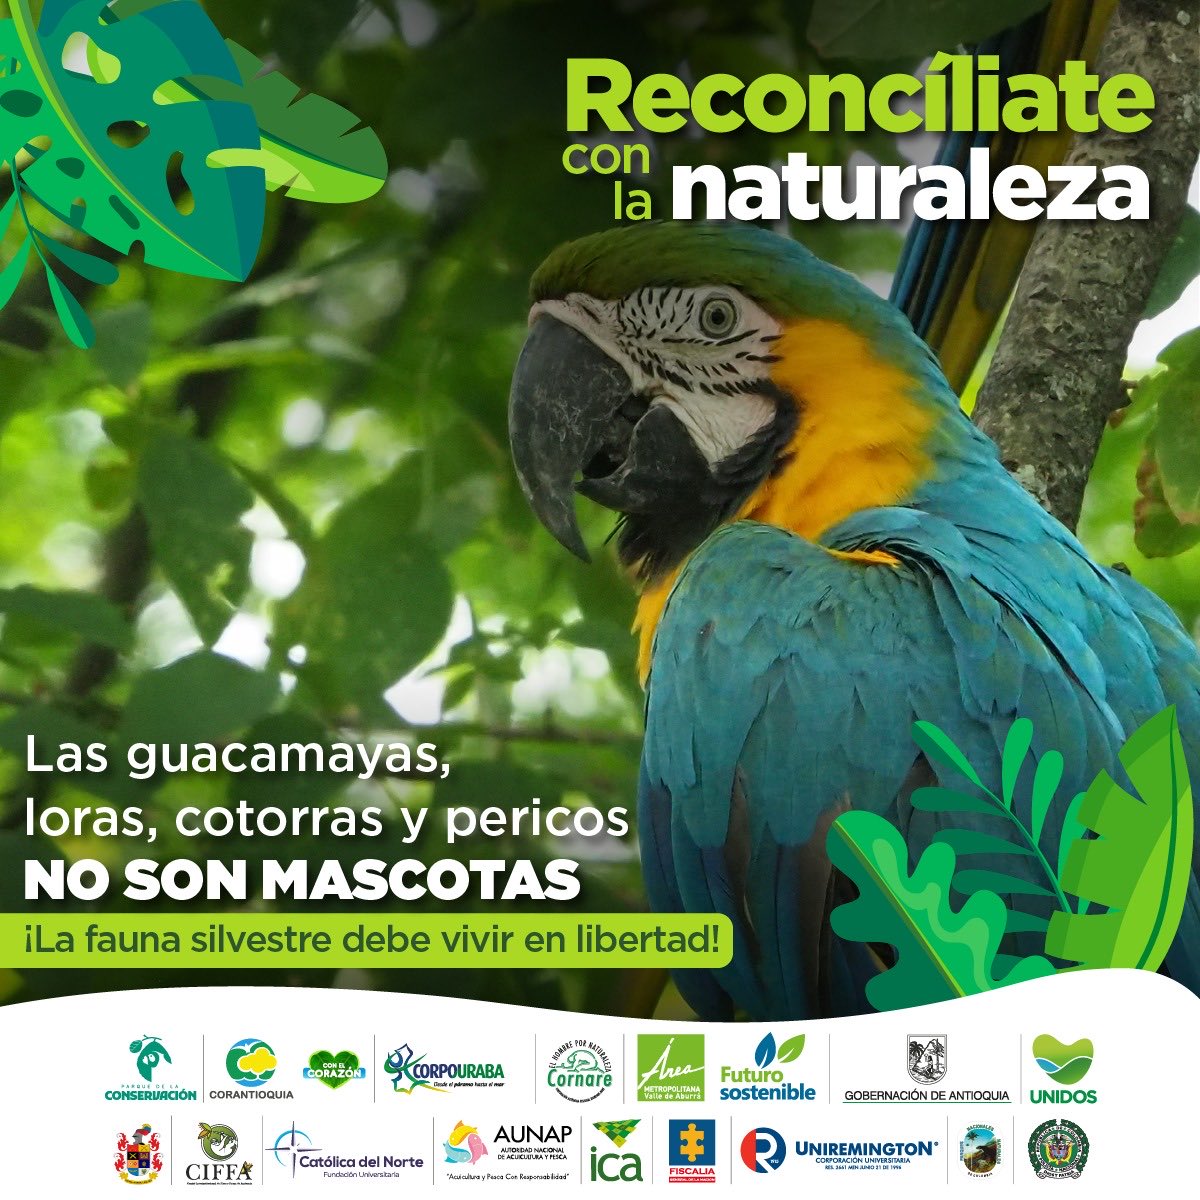 En esta #SemanaMayor #ReconcíliateConLaNaturaleza , no compres, retengas o vendas #FaunaSilvestre. #ParqueDeLaConservación  #CIFFA